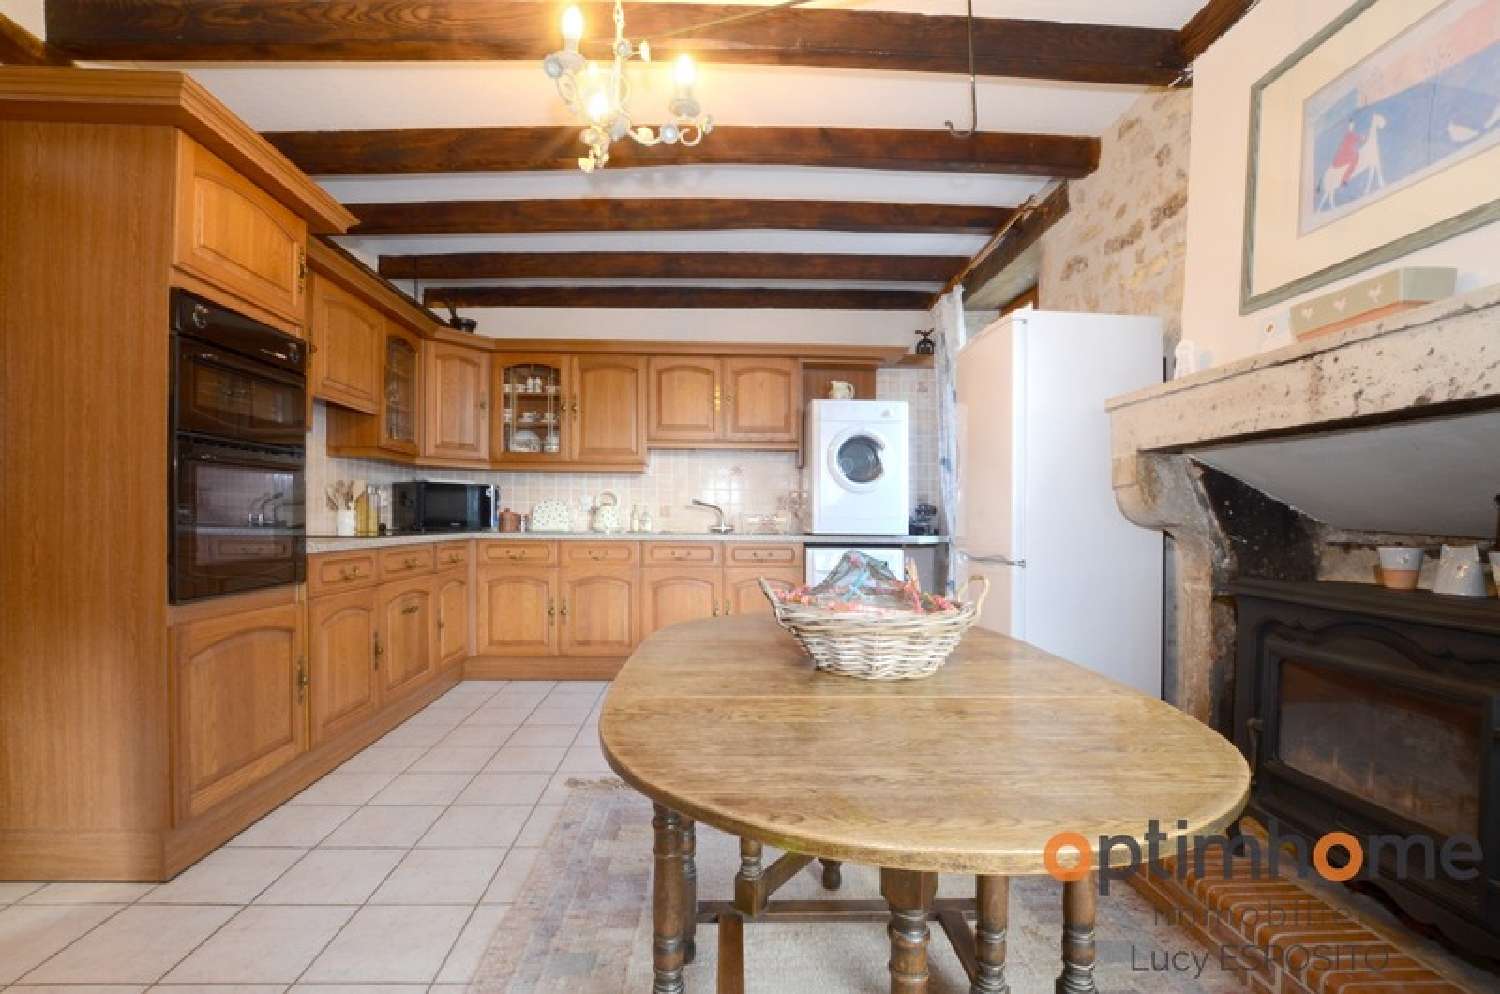  à vendre maison de village Épenède Charente 5